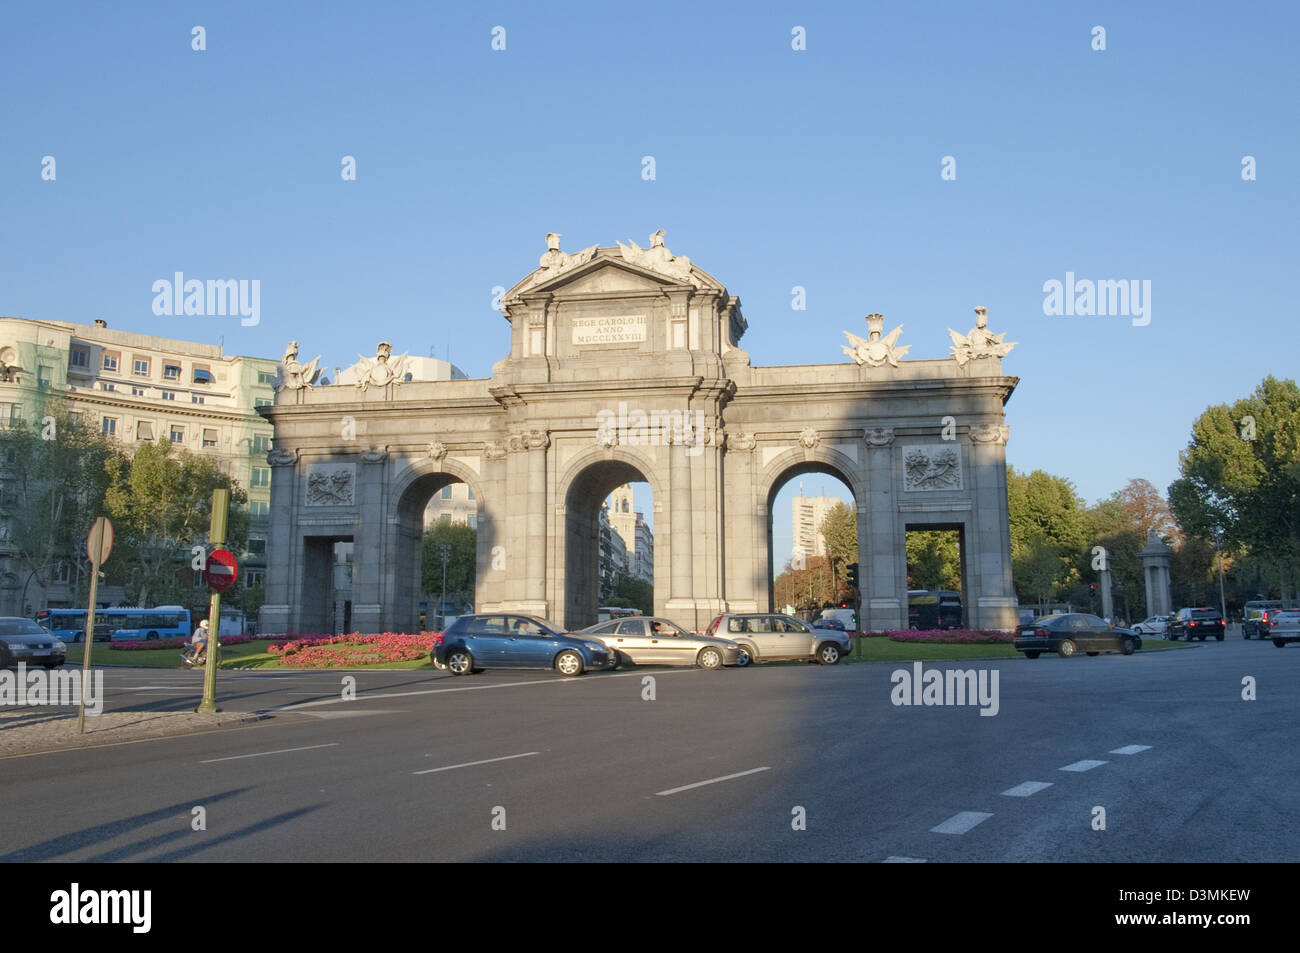 Puerta de Alcalá à Madrid Espagne Banque D'Images